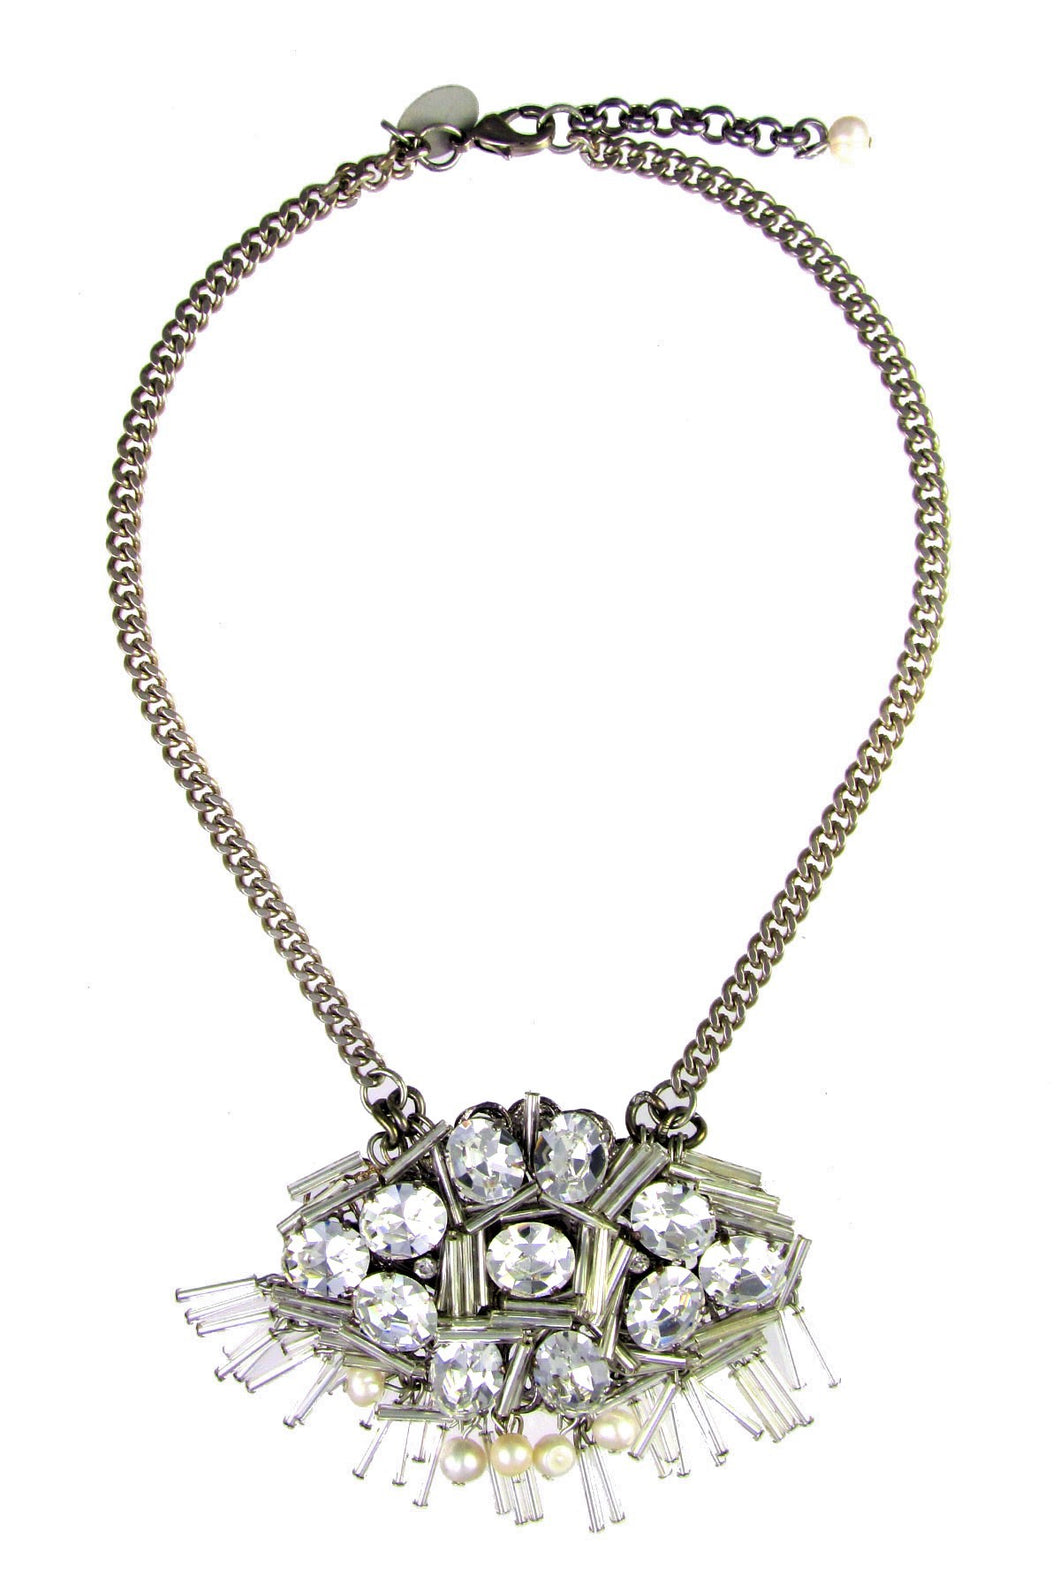 Cora Swarovski Crystals and Pearls necklace